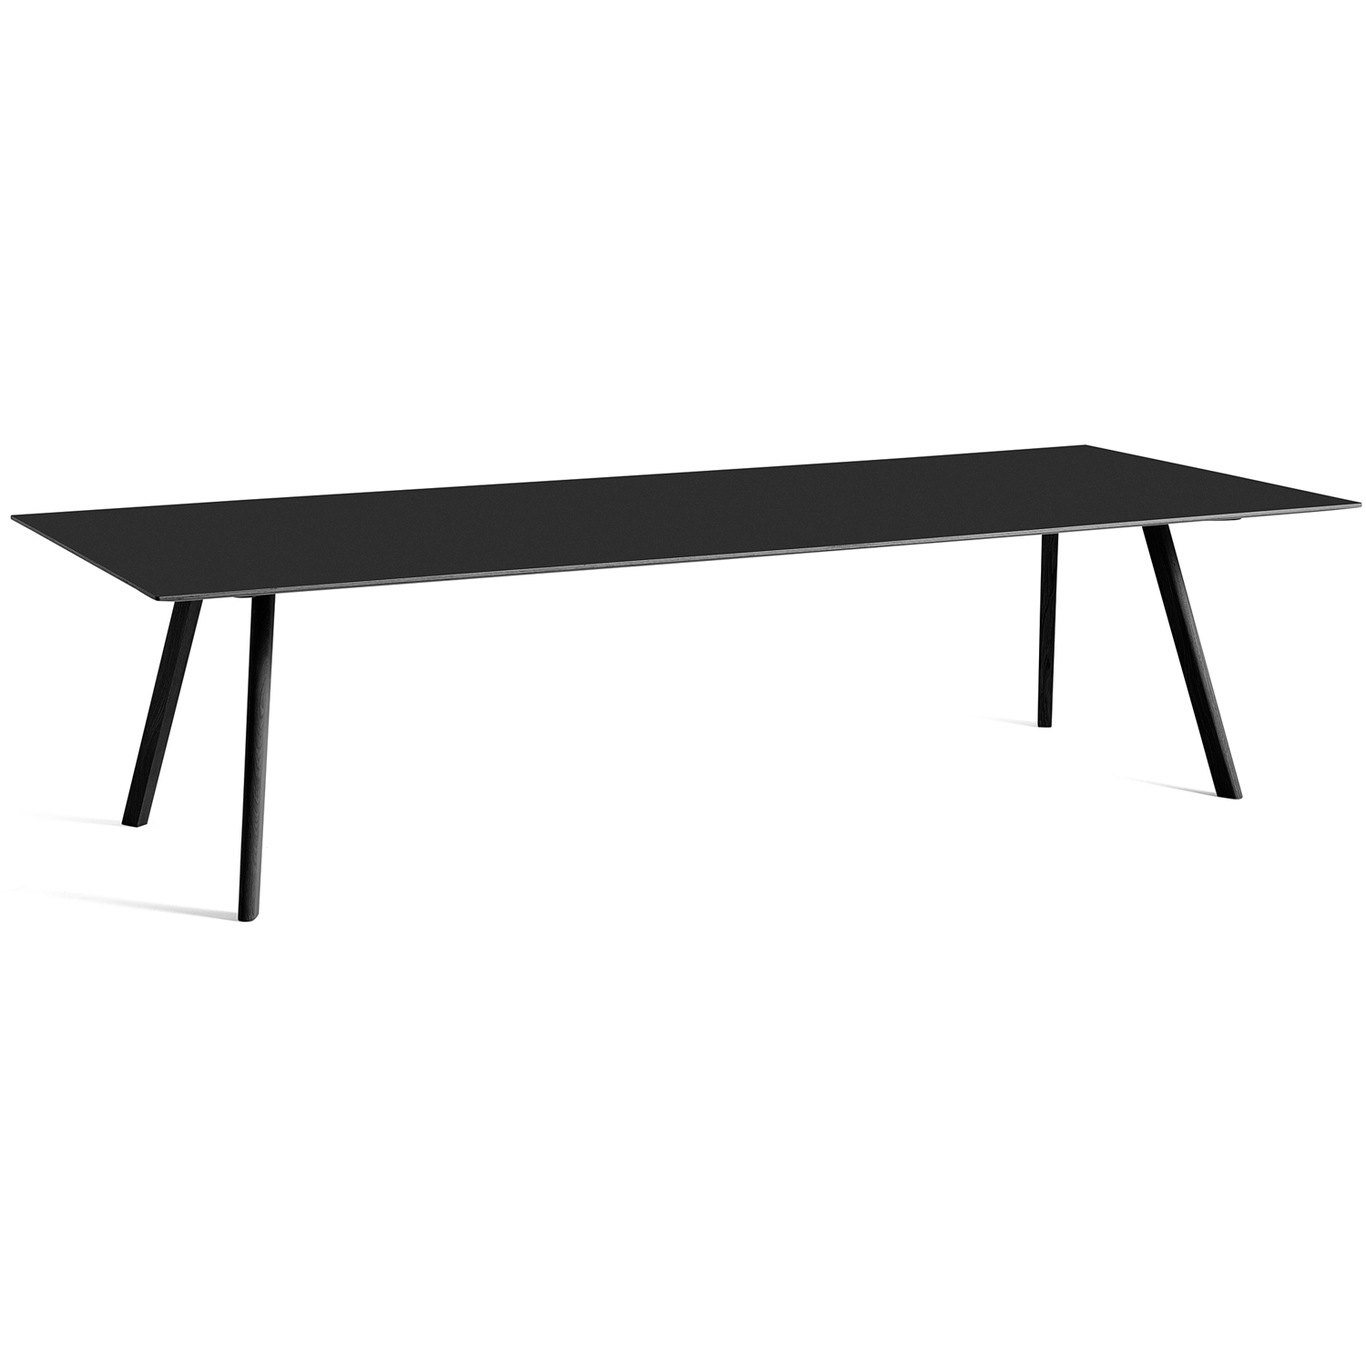 CPH 30 Tisch 250x120 cm, Schwarz Mit Wasserlack Behandelte Eiche